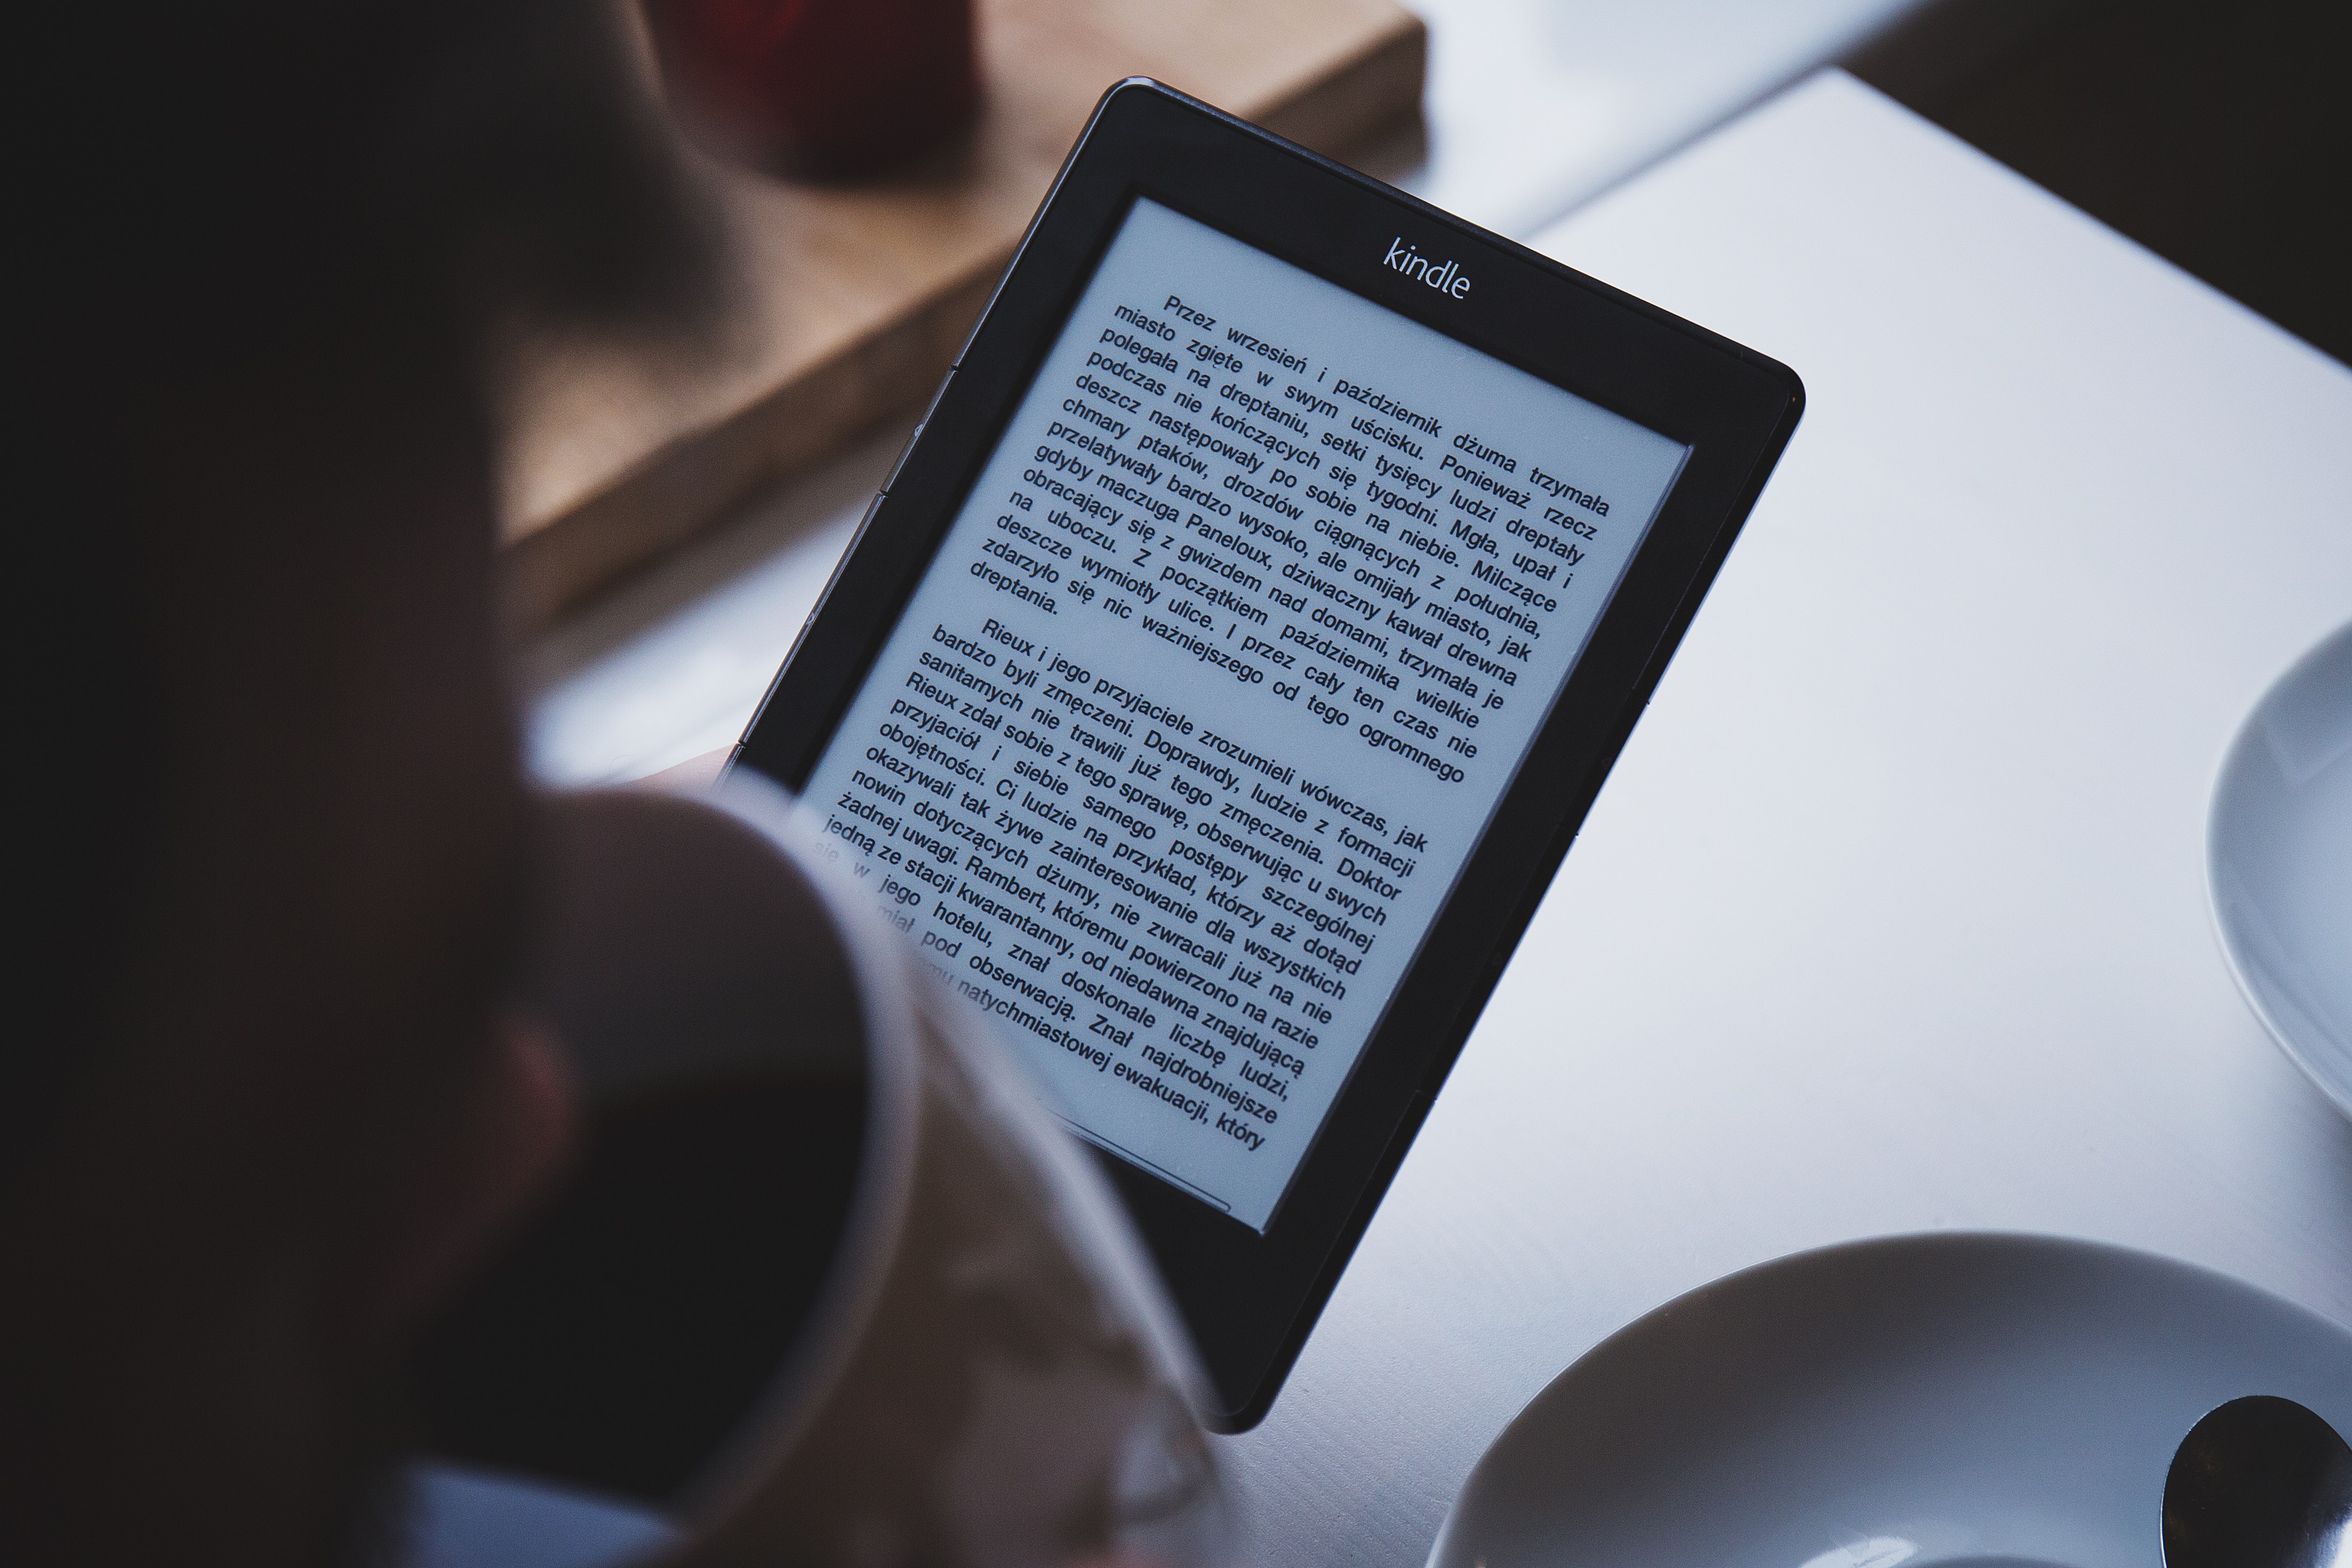 Kindle e-readers use e-paper